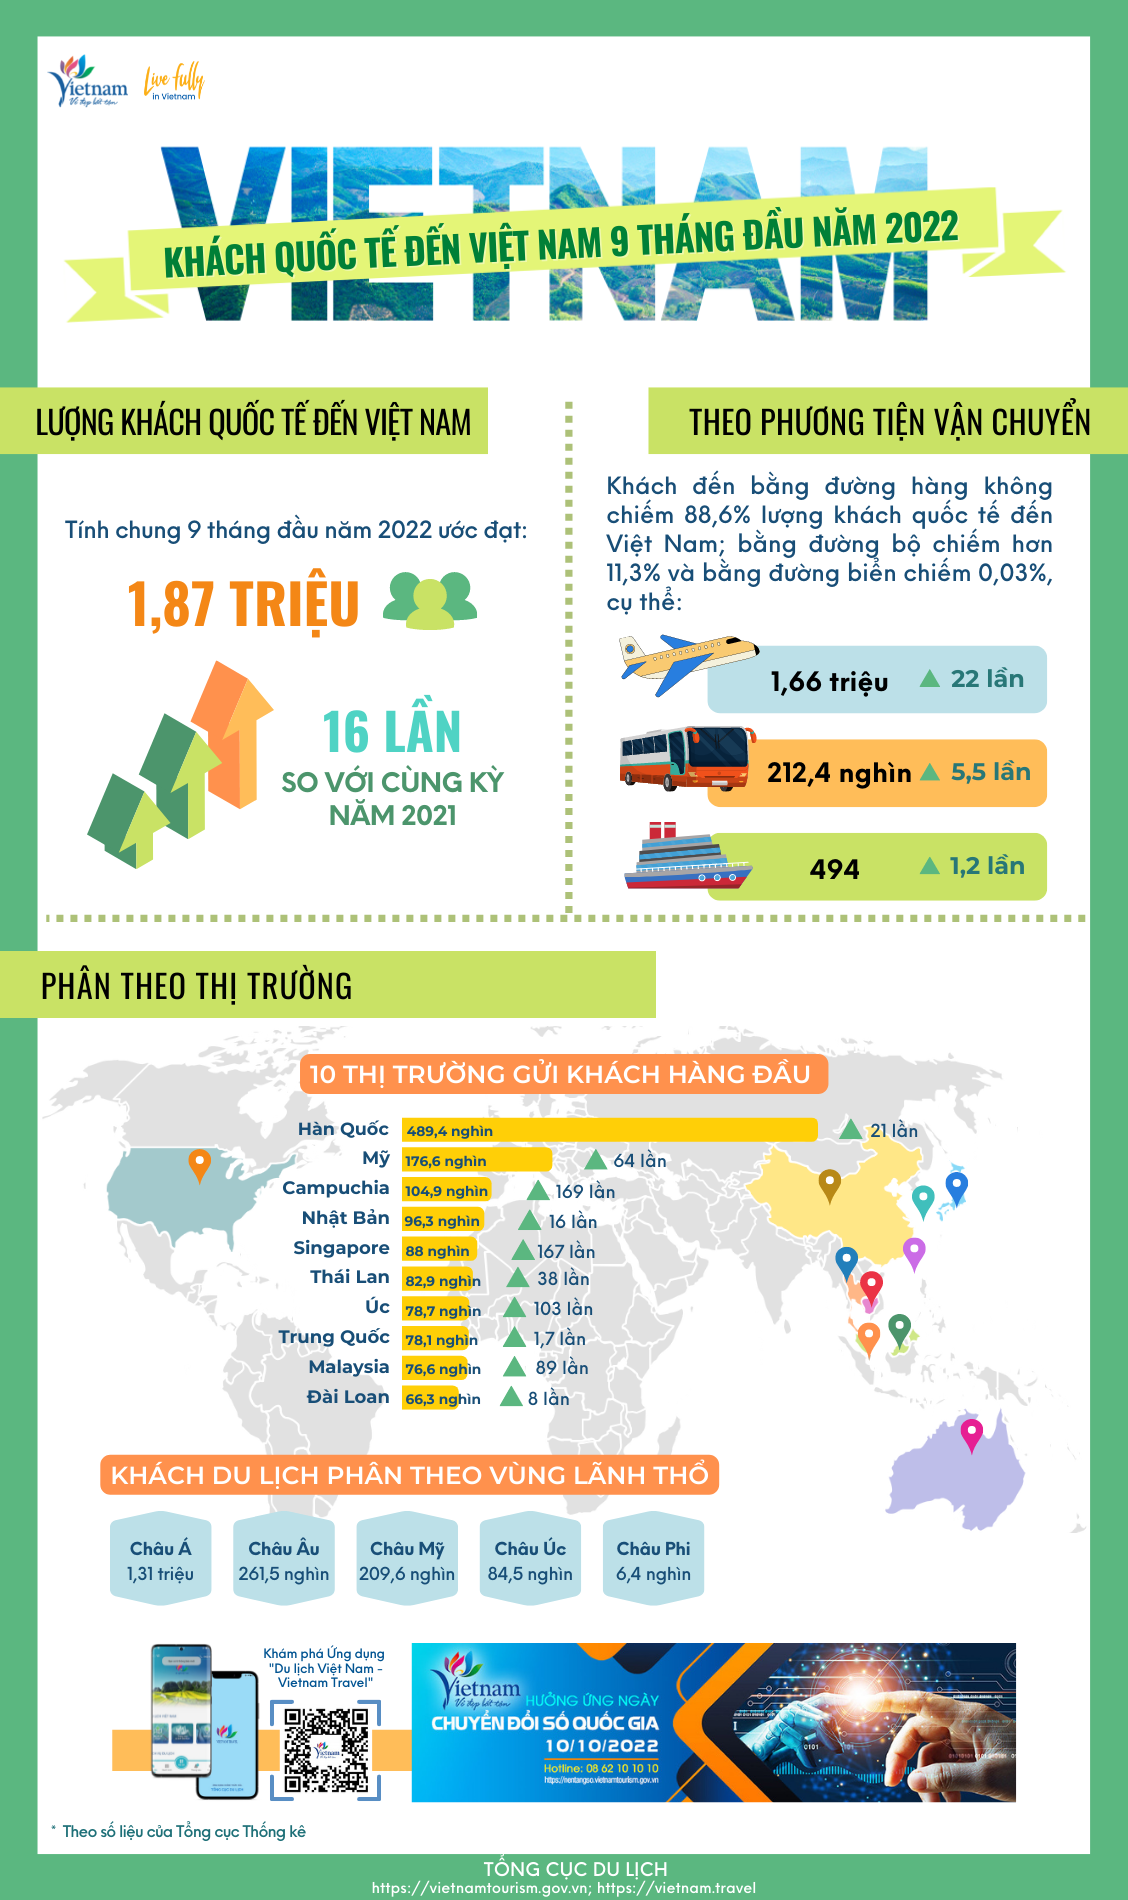 [Infographic] Khách quốc tế đến Việt Nam 9 tháng đầu năm 2022